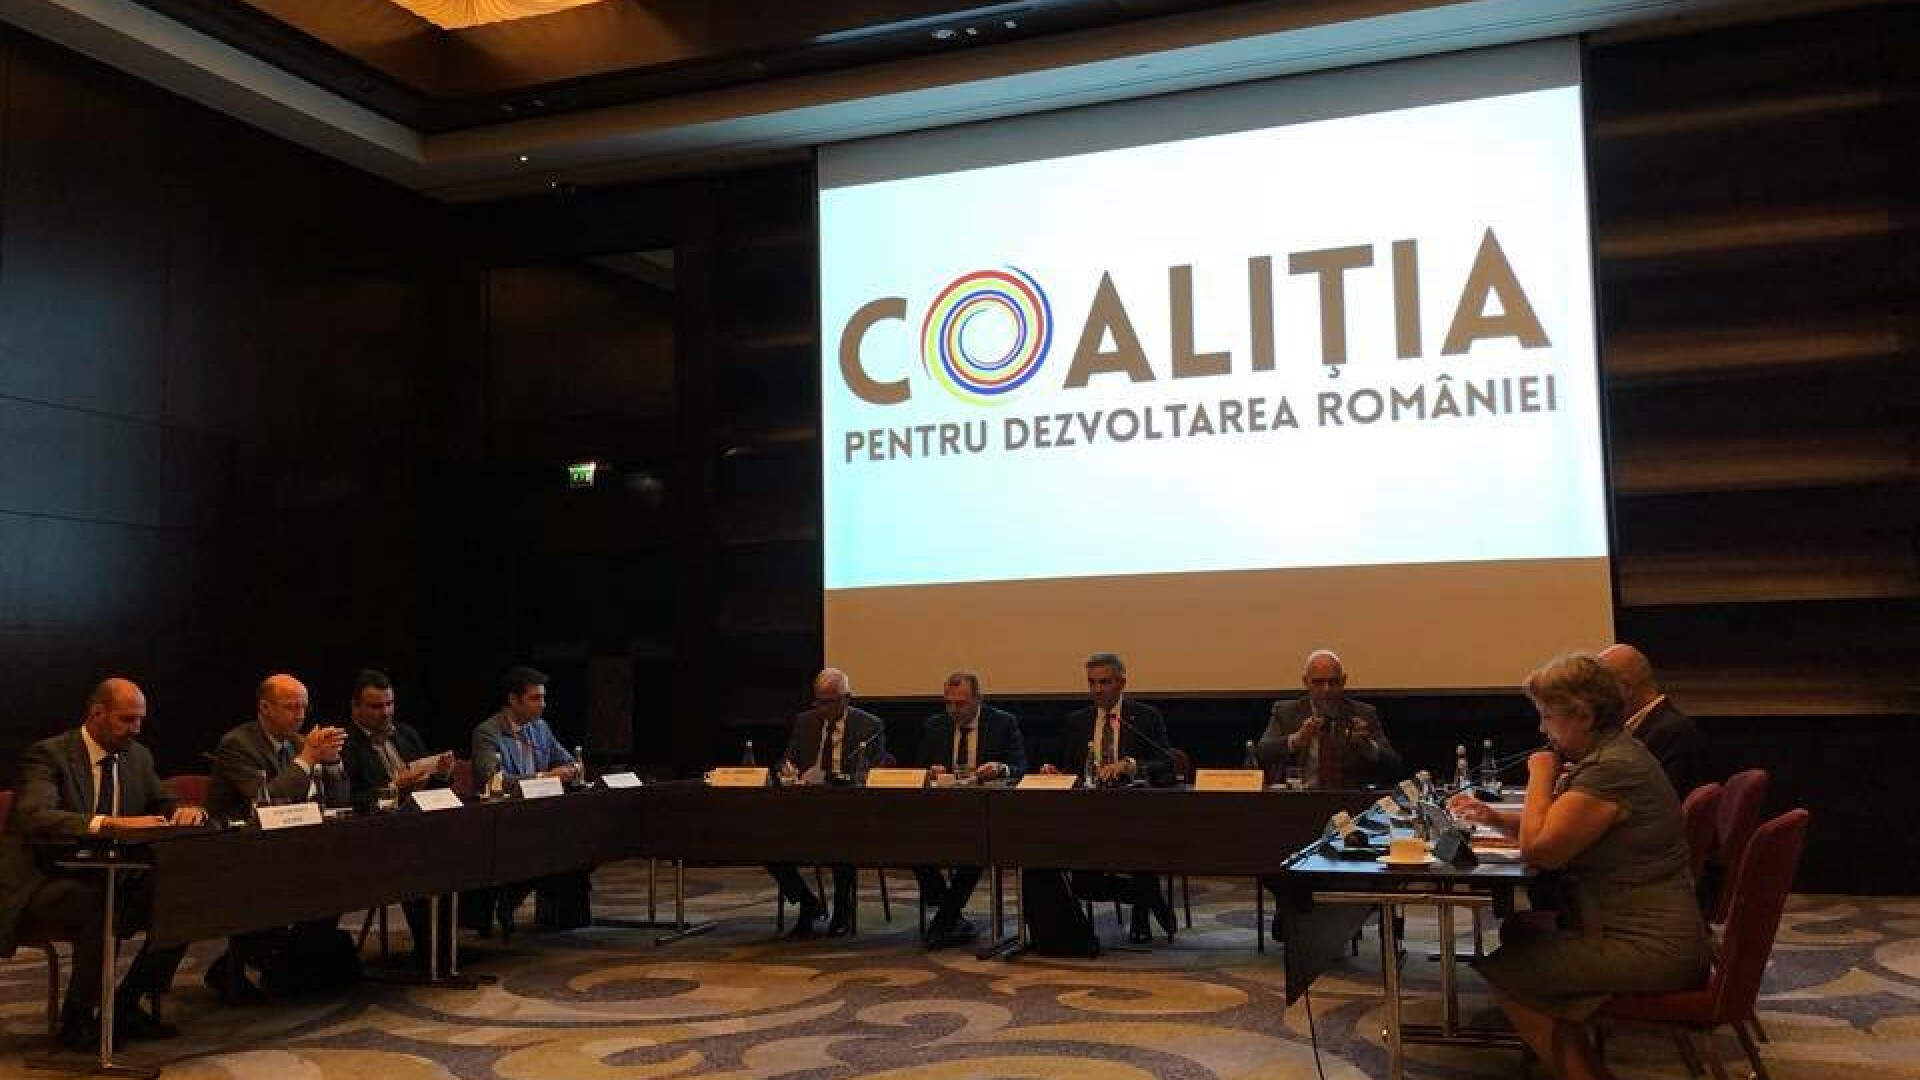 Coaliția pentru Dezvoltarea României